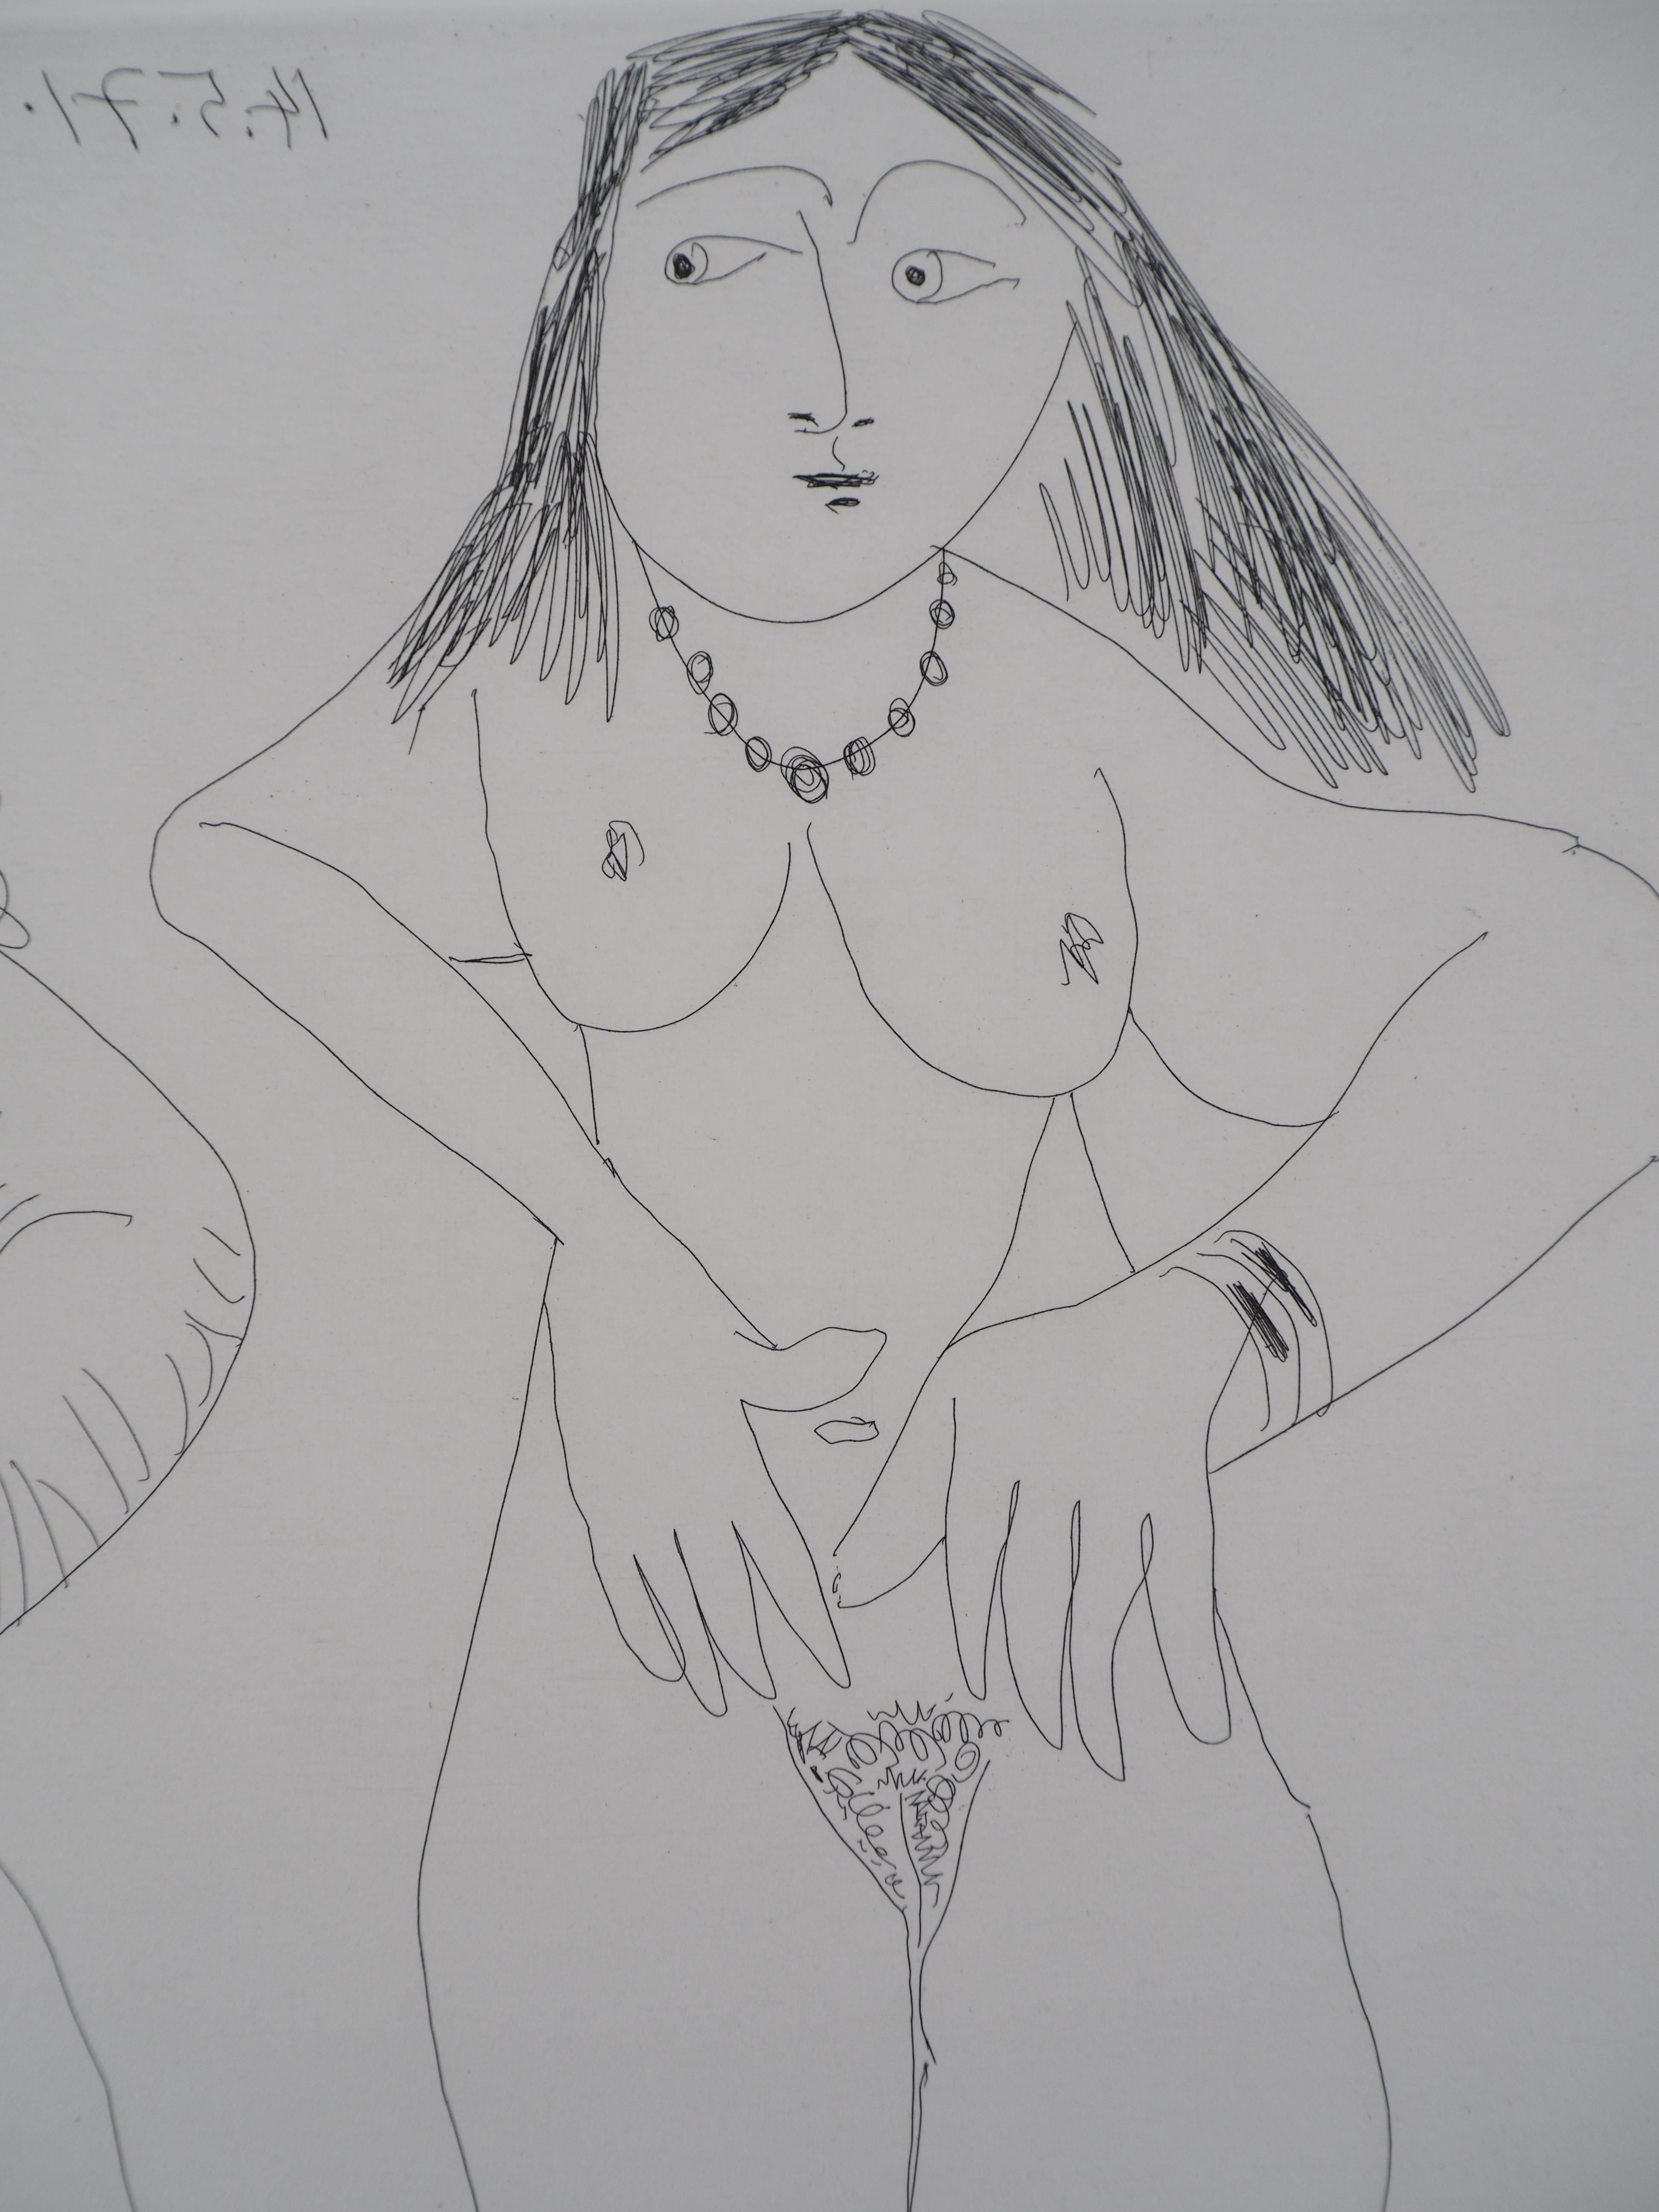 Pablo Picasso (1881-1973)
Dega avec trois femmes nues, 1971

Gravure originale
Signé avec le cachet de l'artiste
Numéroté / 50
Sur vellum 50 x 65 cm (c. 20 x 26 in)
Taille de l'image 36.5 x 49 cm (c. 15 x 20 in)

REFERENCES :
- Catalogue raisonné